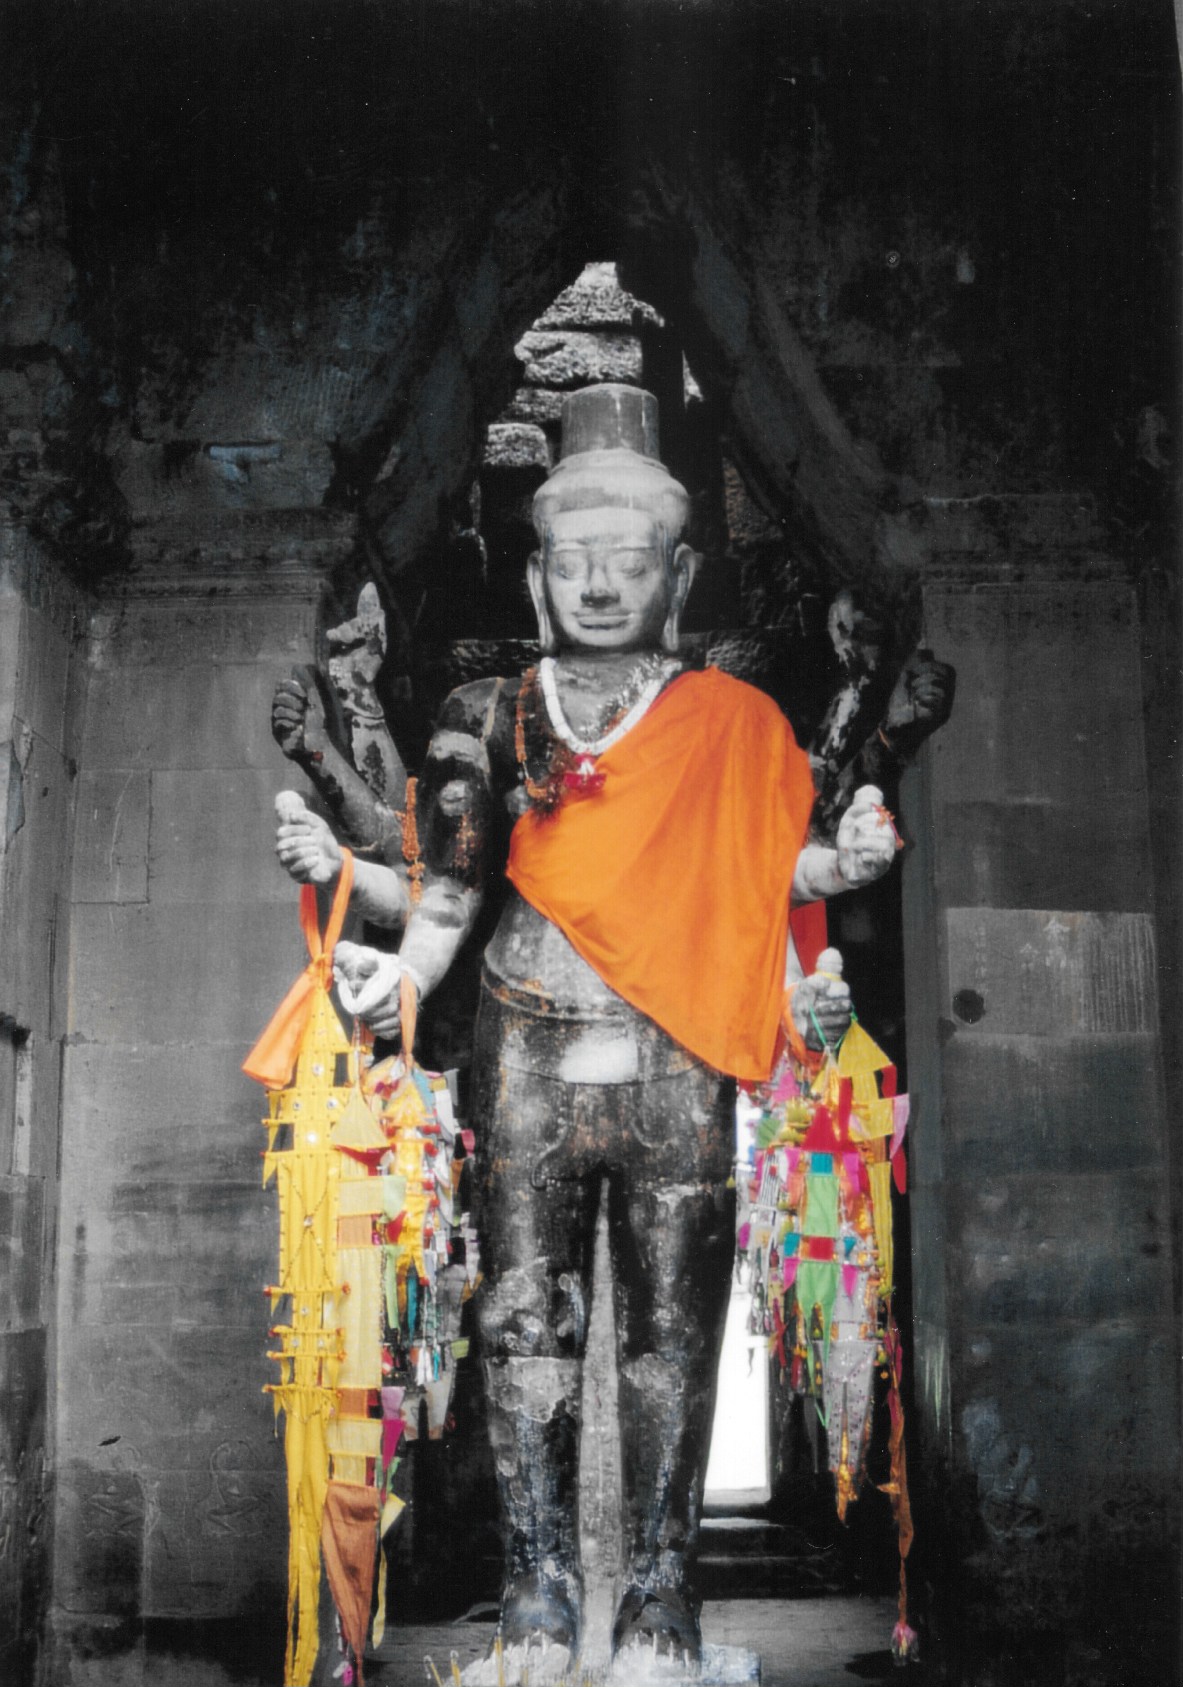 Cette statue représente le dieu Vishnu transformé en Lokesvara dans le temple d’Angkor Vat. Le Lokesvara est une forme non encore accomplie du Bouddha appelé Boddhisatva compatissant. Cette transformation montre combien les deux religions dominantes, bouddhisme et hindouisme, ont pu se mêler sur ce site.